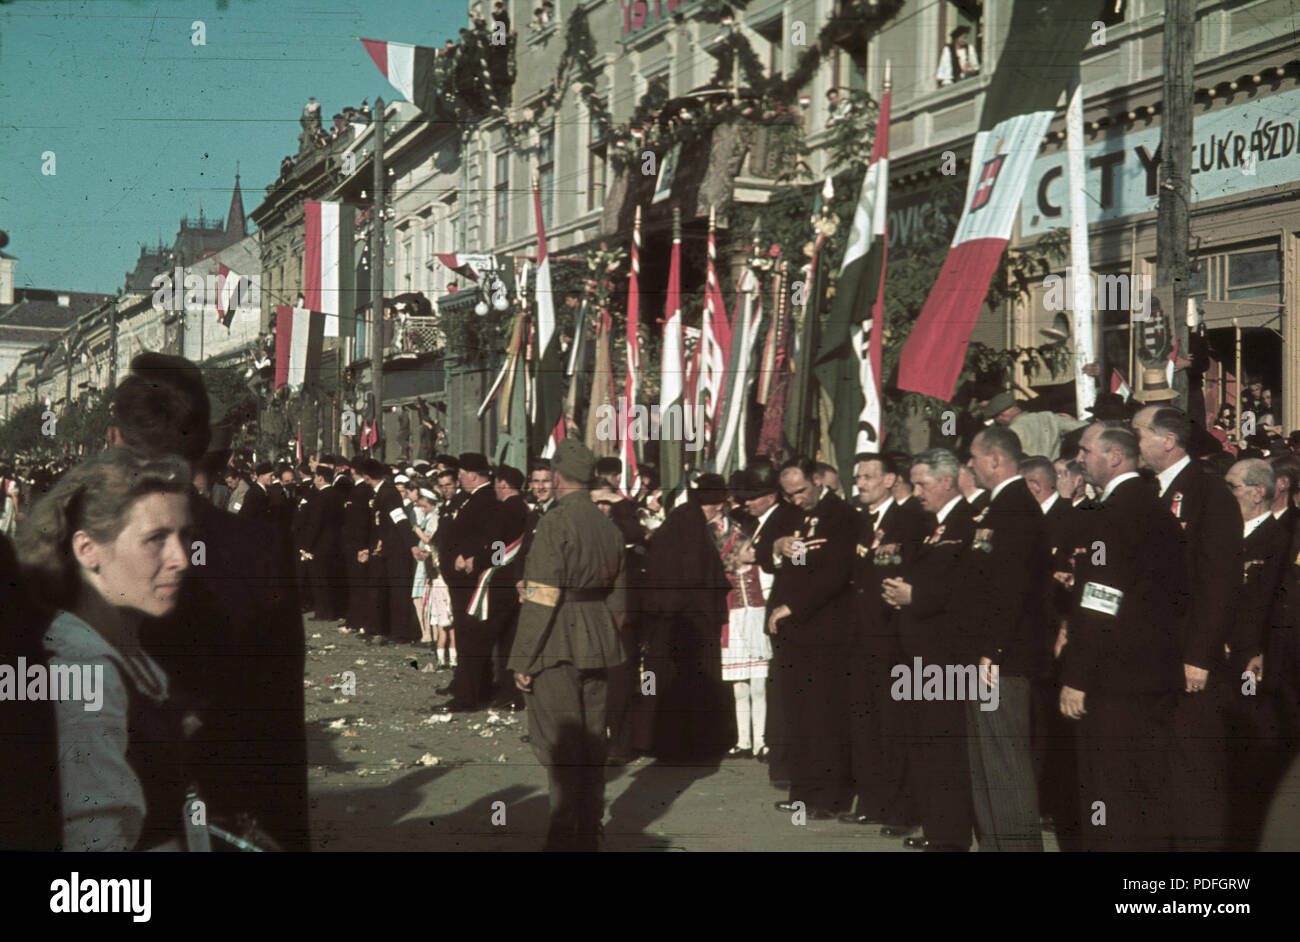 136 Fő tér (Piata Trandafirilor), ünneplők a Bolyai utca sarkánál álló ház előtt a magyar csapatok bevonulása idején. A felvétel 1940. szeptember 10-én készült. Fortepan 92503 Stock Photo